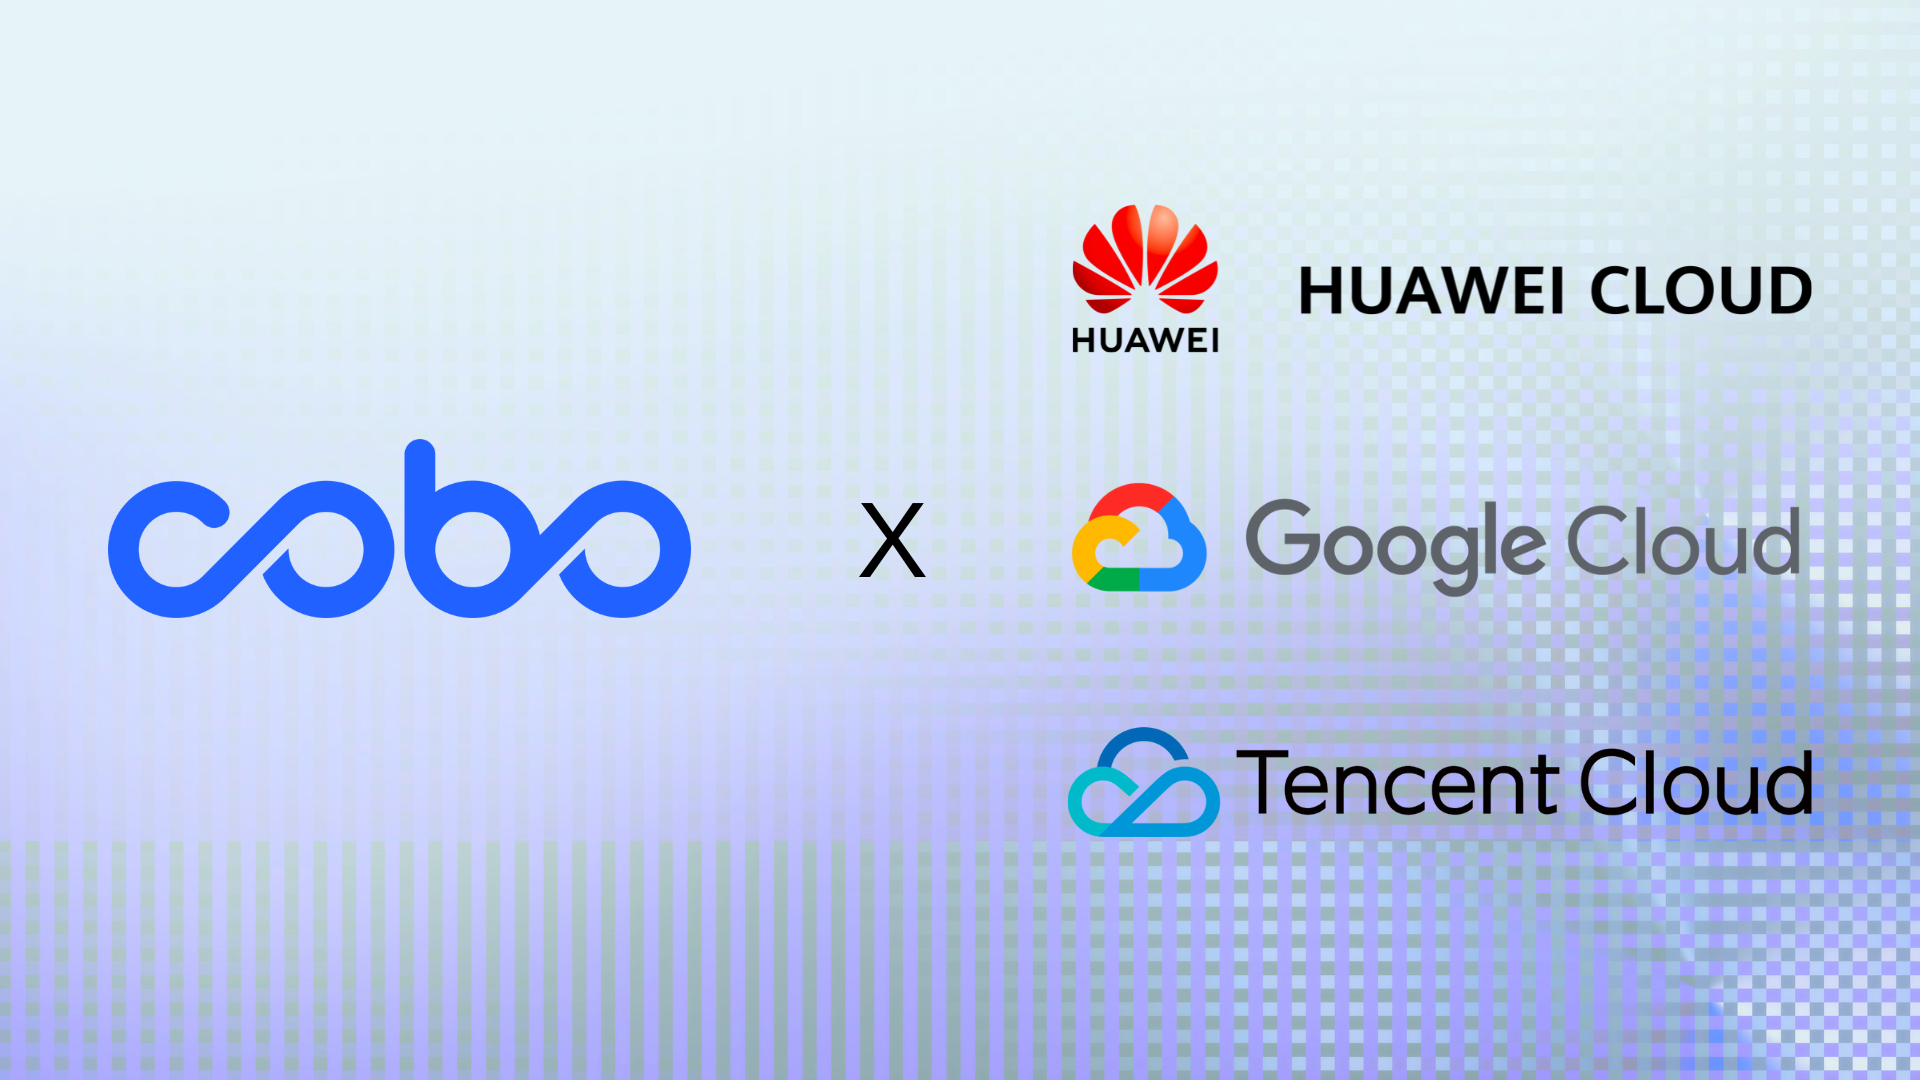 Cobo google cloud tencent cloud huawei cloud partnership